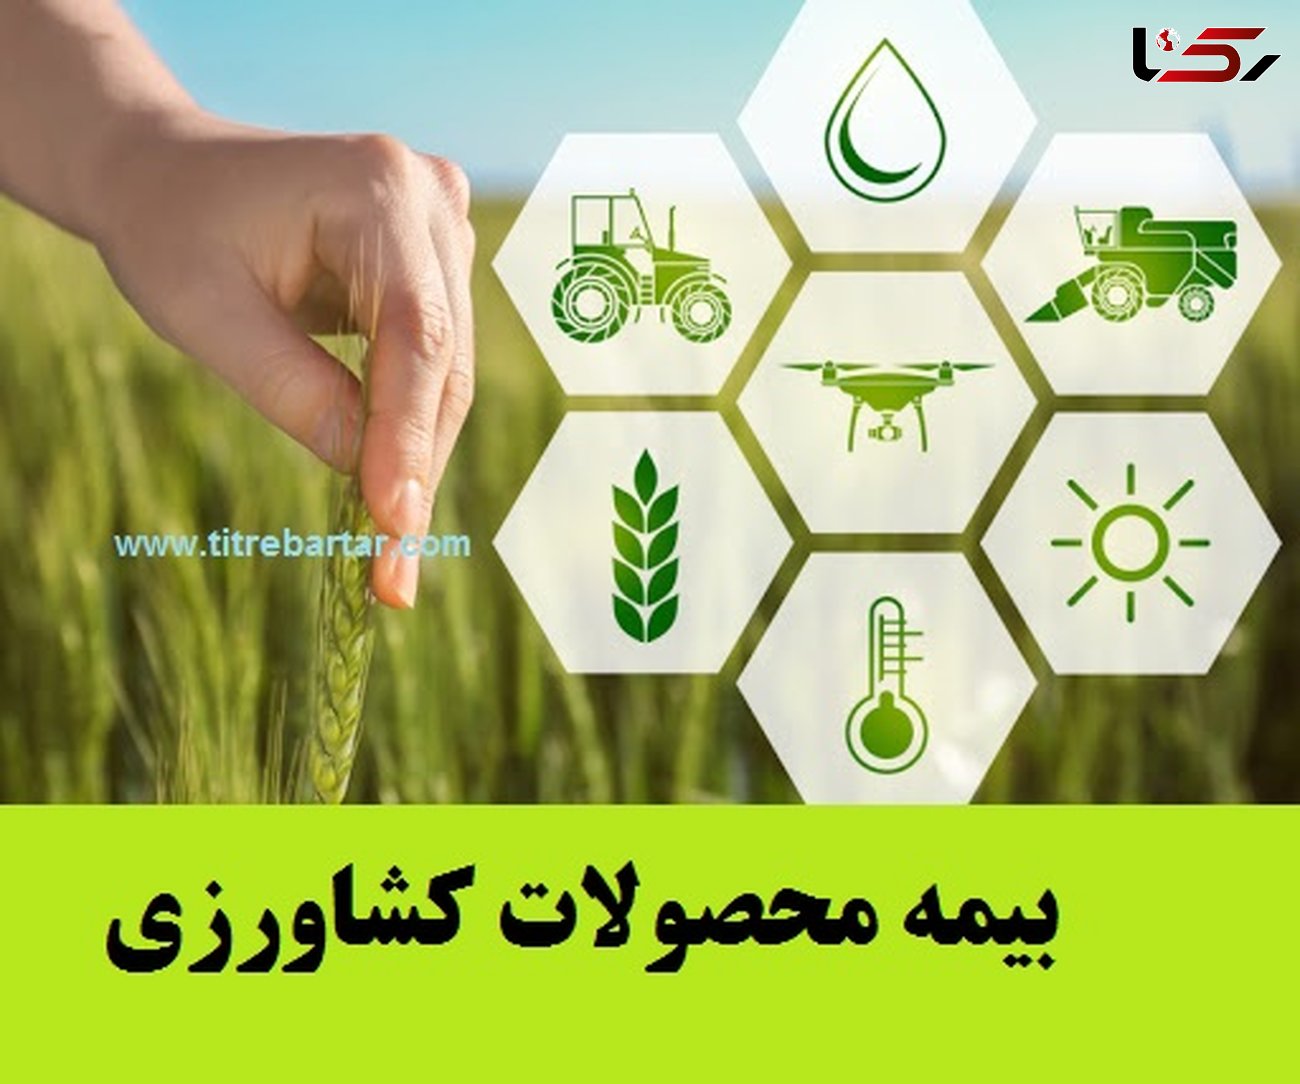 کسب رتبه اول کشوری در توسعه ضریب نفوذ بیمه توسط صندوق بیمه محصولات کشاورزی استان چهارمحال وبختیاری  